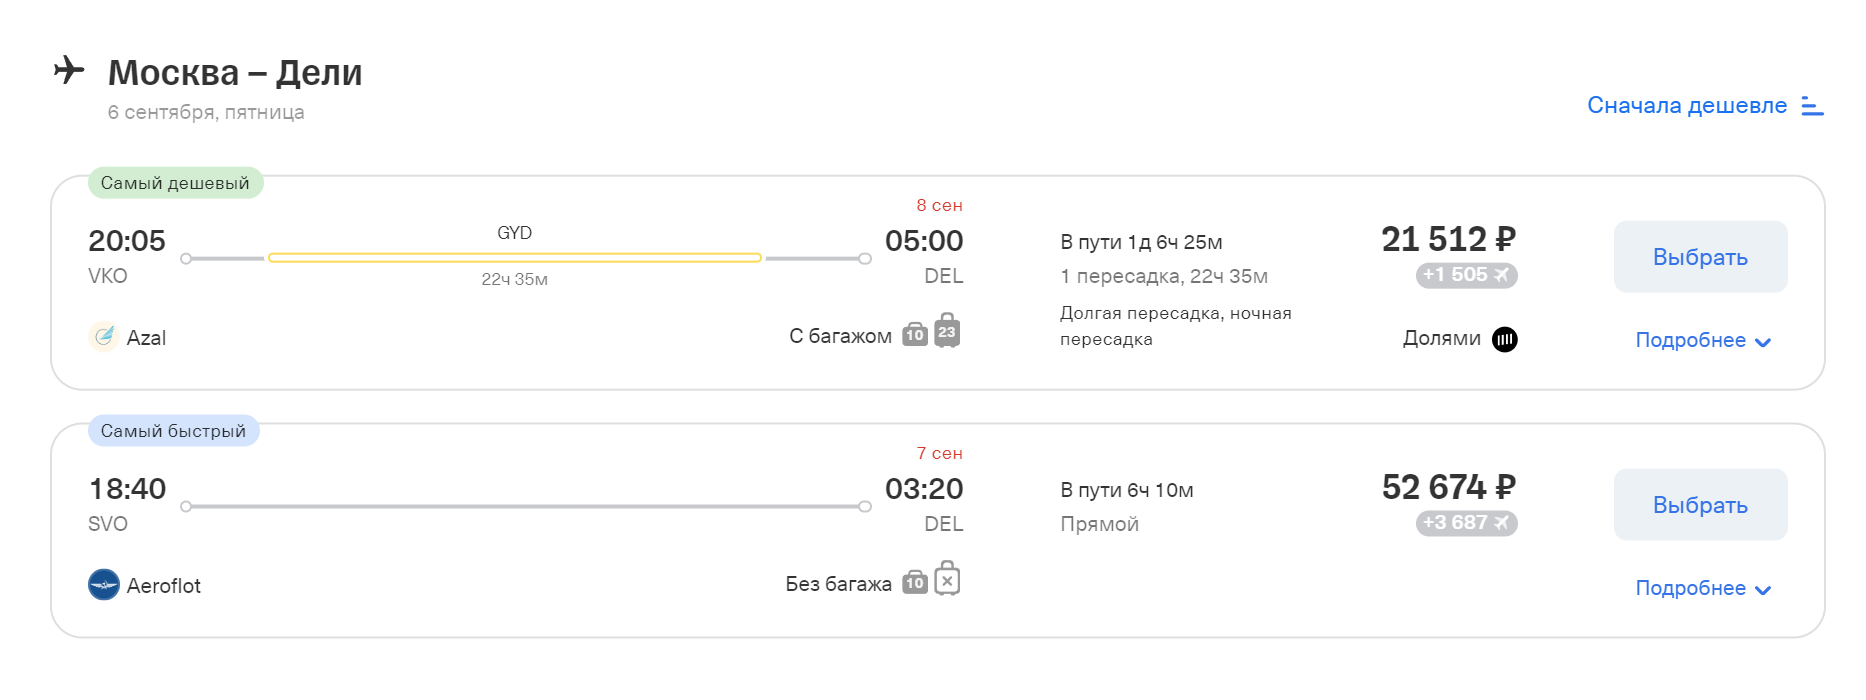 Лететь из Москвы в Дели напрямую — 6 часов, с пересадкой — больше суток. Зато по пути можно посмотреть Баку. Источник: tinkoff.ru